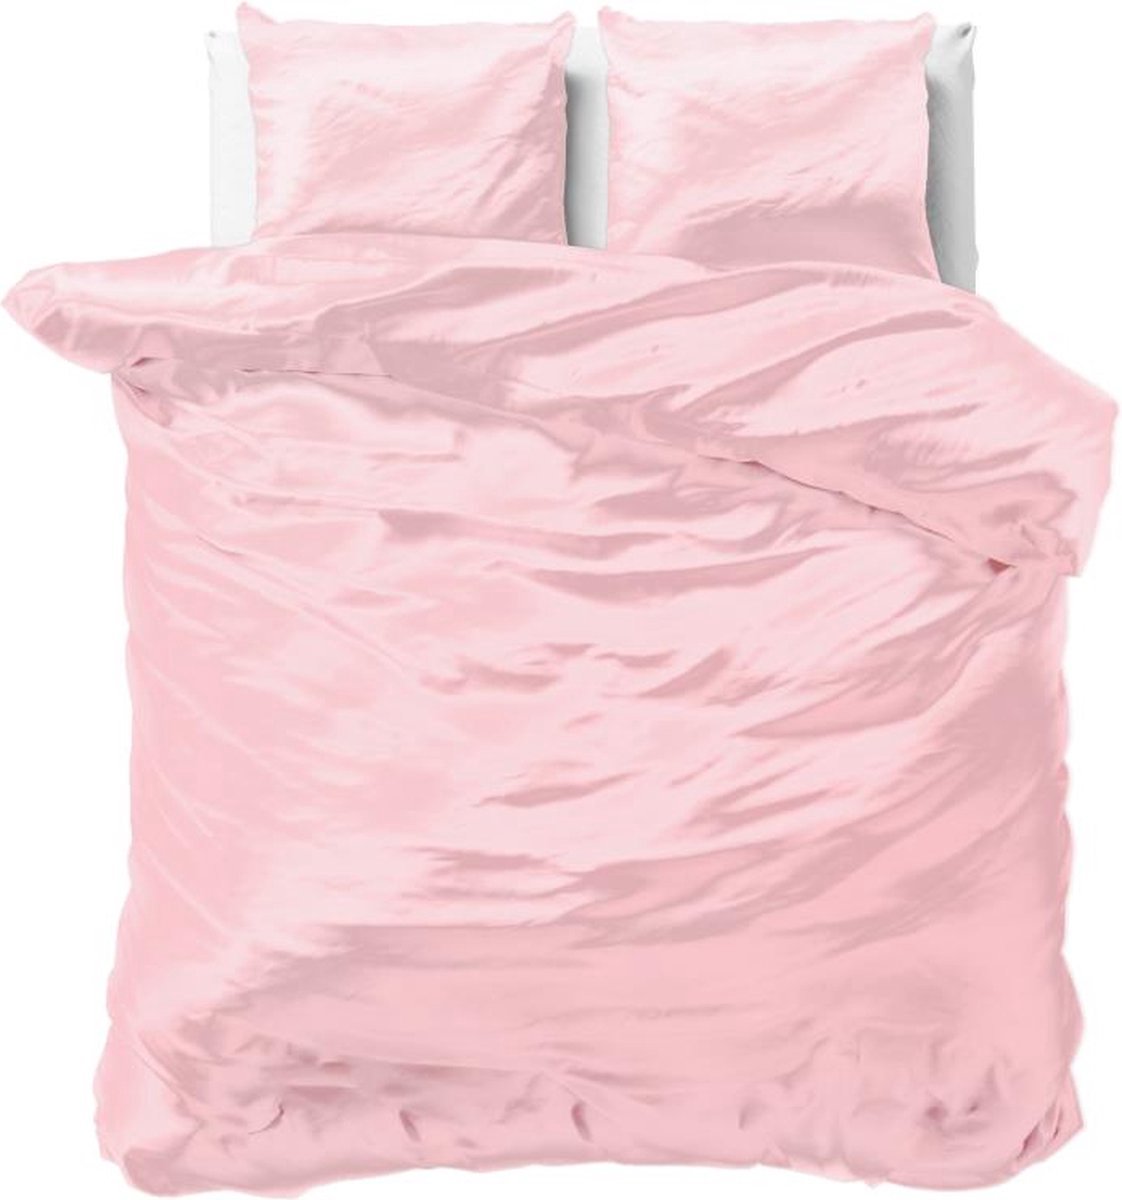 Luxe glans satijn dekbedovertrek uni roze - tweepersoons (200x200/220) - tegen acne, onzuiverheden en warrig haar - heerlijk zacht en soepel